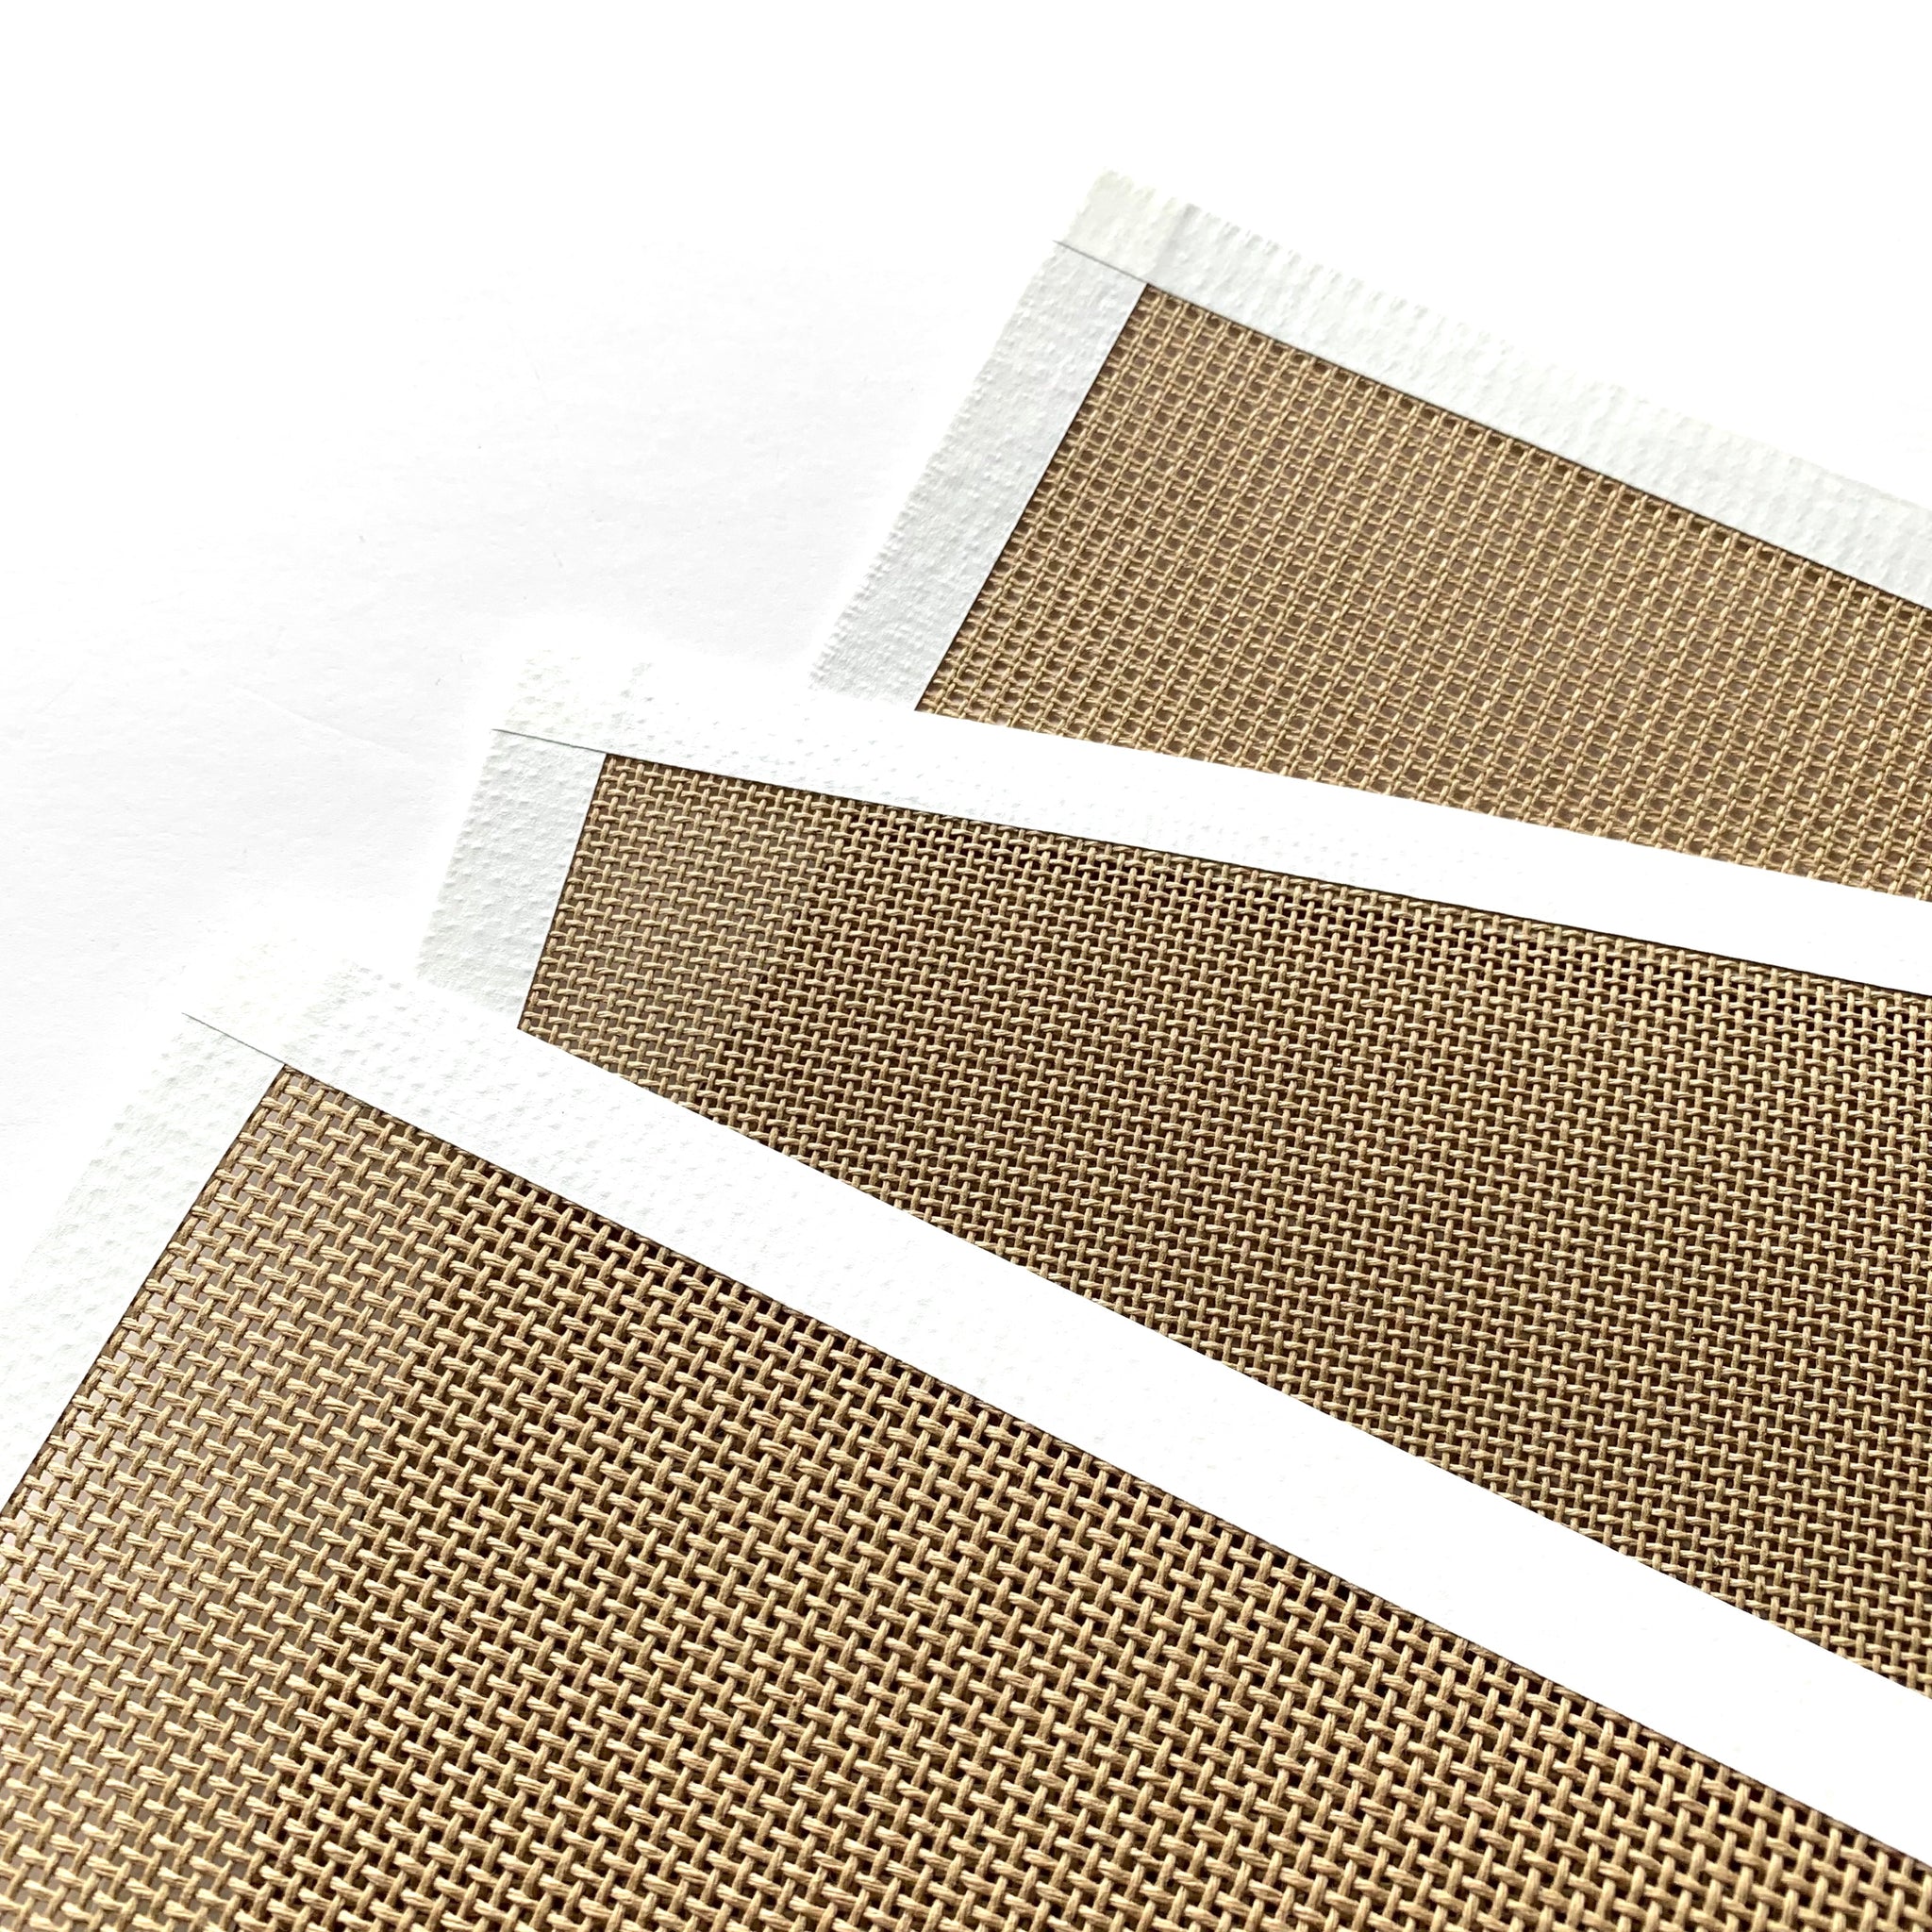 Blank Needlepoint Canvas For 4” Design - 8x8” – Spellbound Stitchery